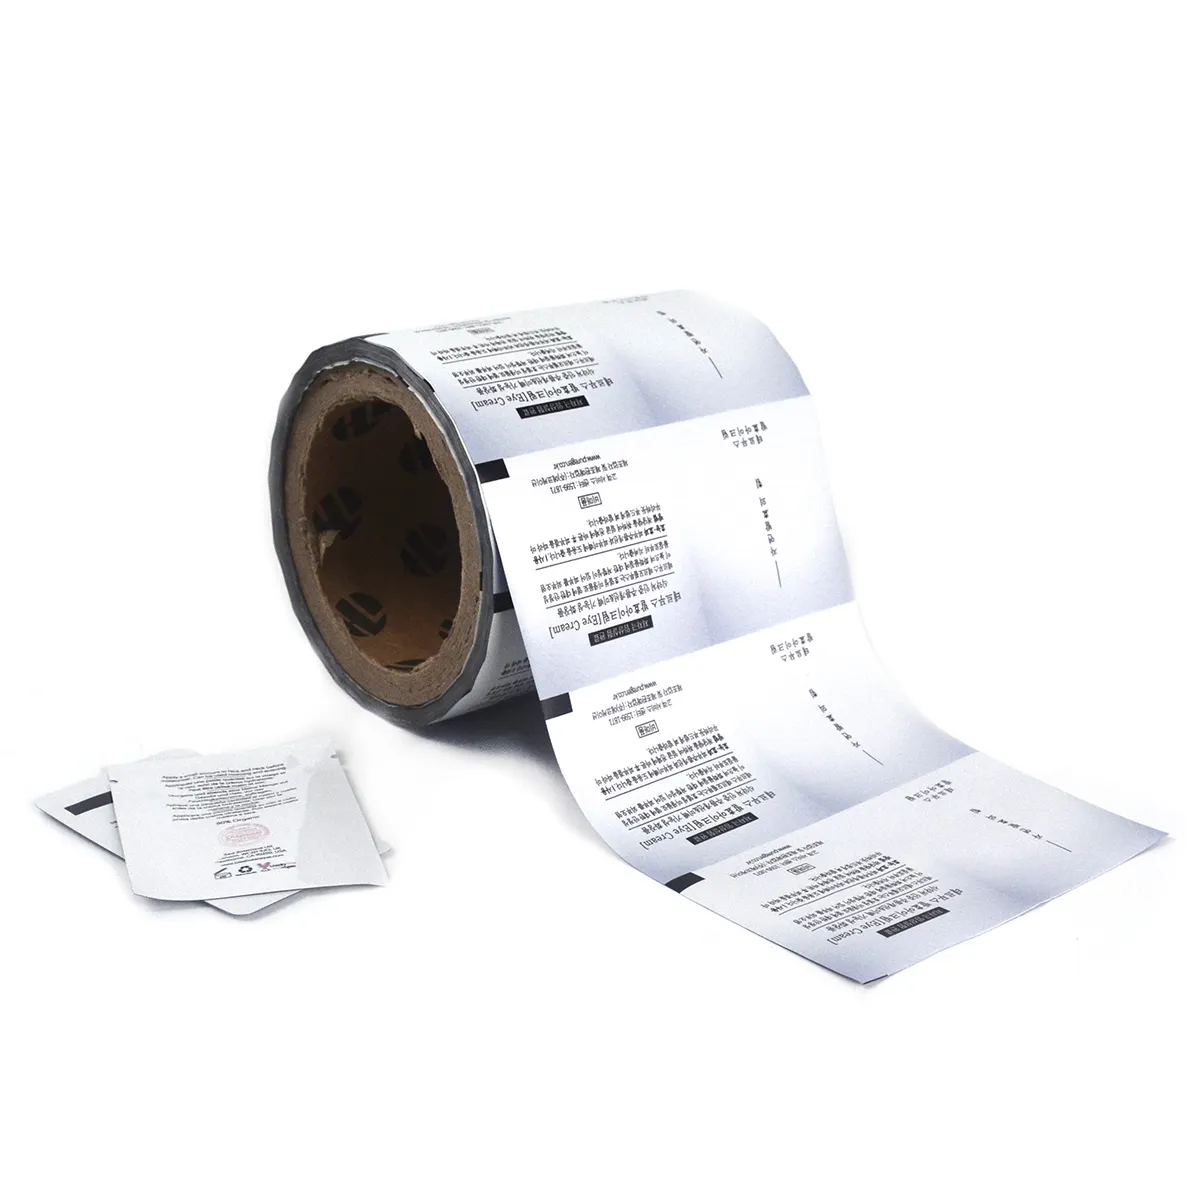 Stok gulungan cetak sesuai pesanan kualitas makanan laminasi Sachet plastik aluminium Foil kemasan Film rol untuk kue makanan ringan